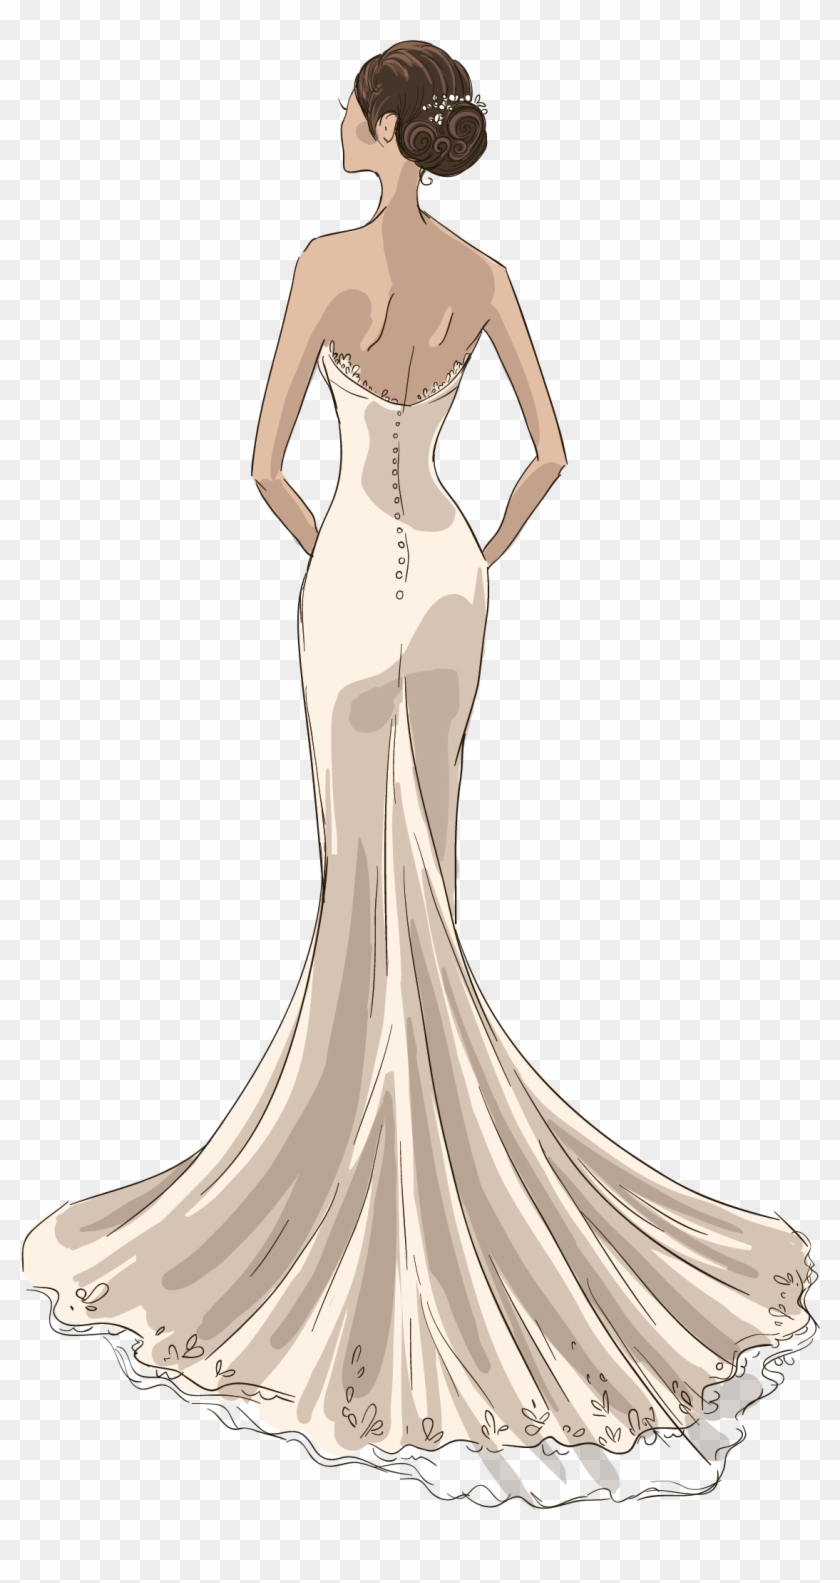 15424 Wedding Dress Sketch Images Stock Photos  Vectors  Shutterstock